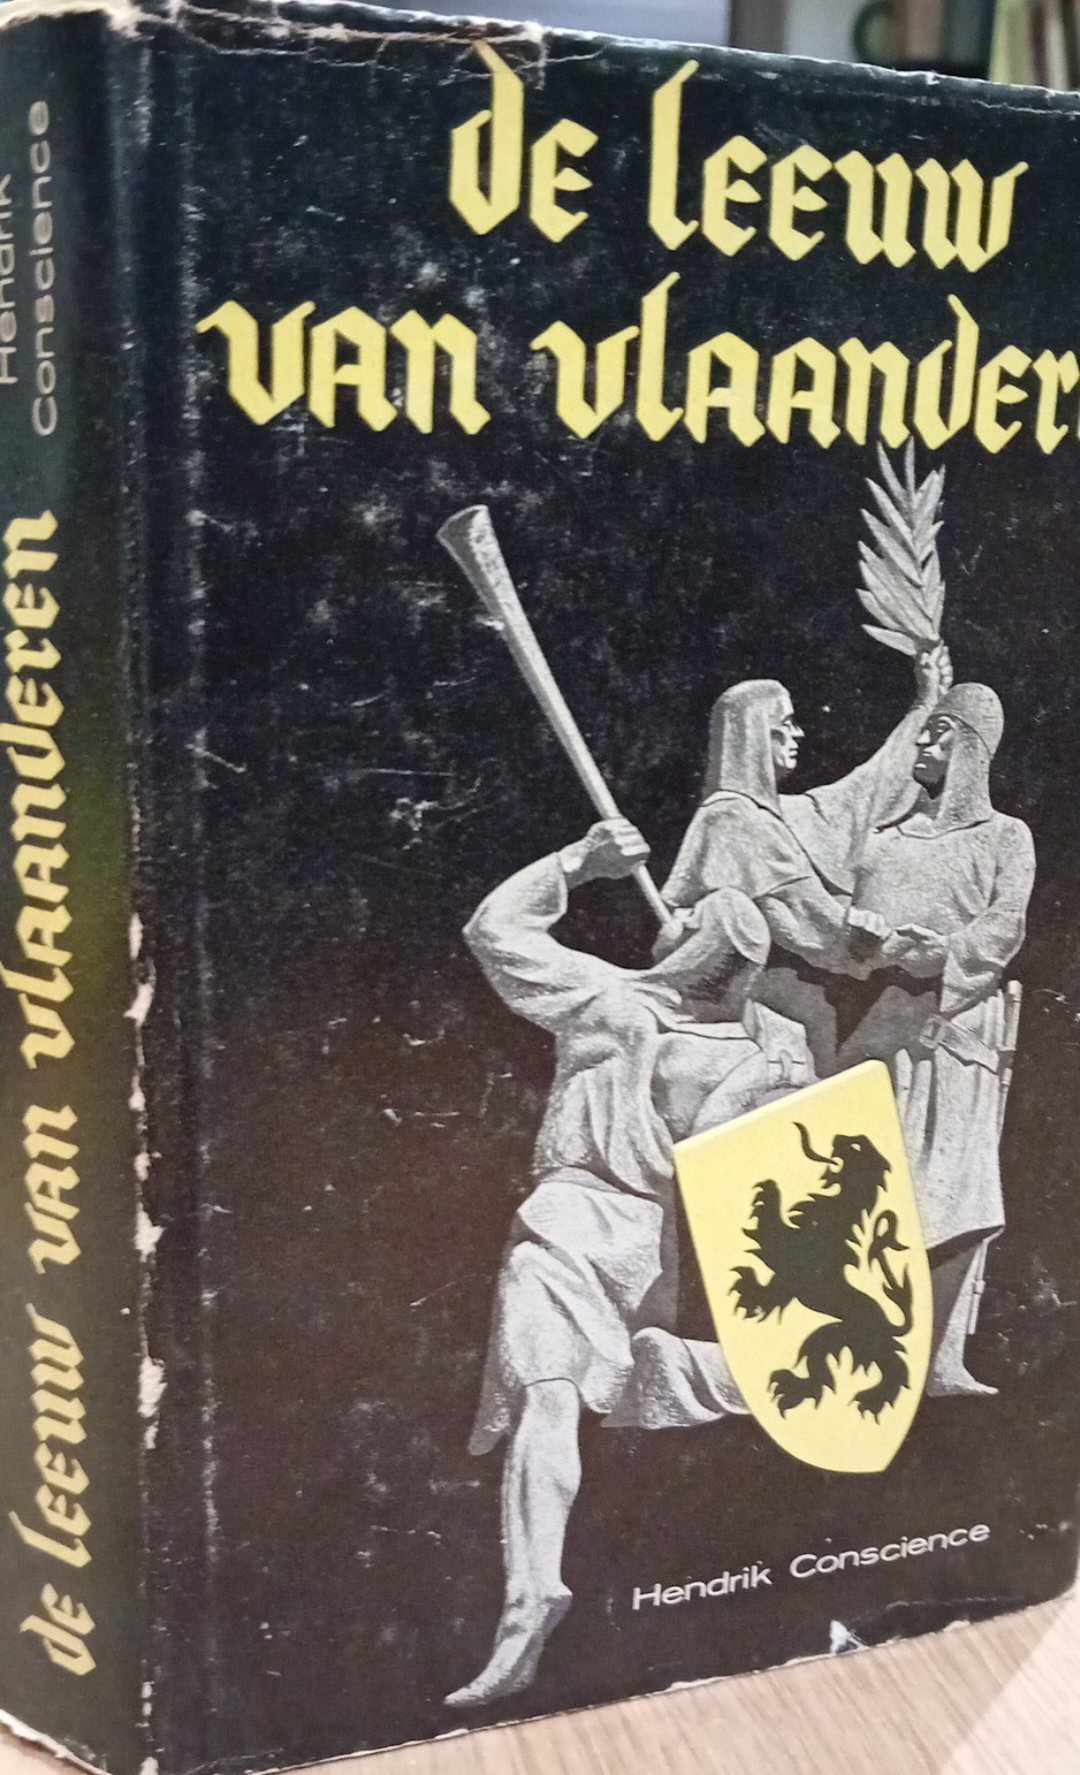 De Leeuw van Vlaanderen door Hendrik Concience - uitgave 1963